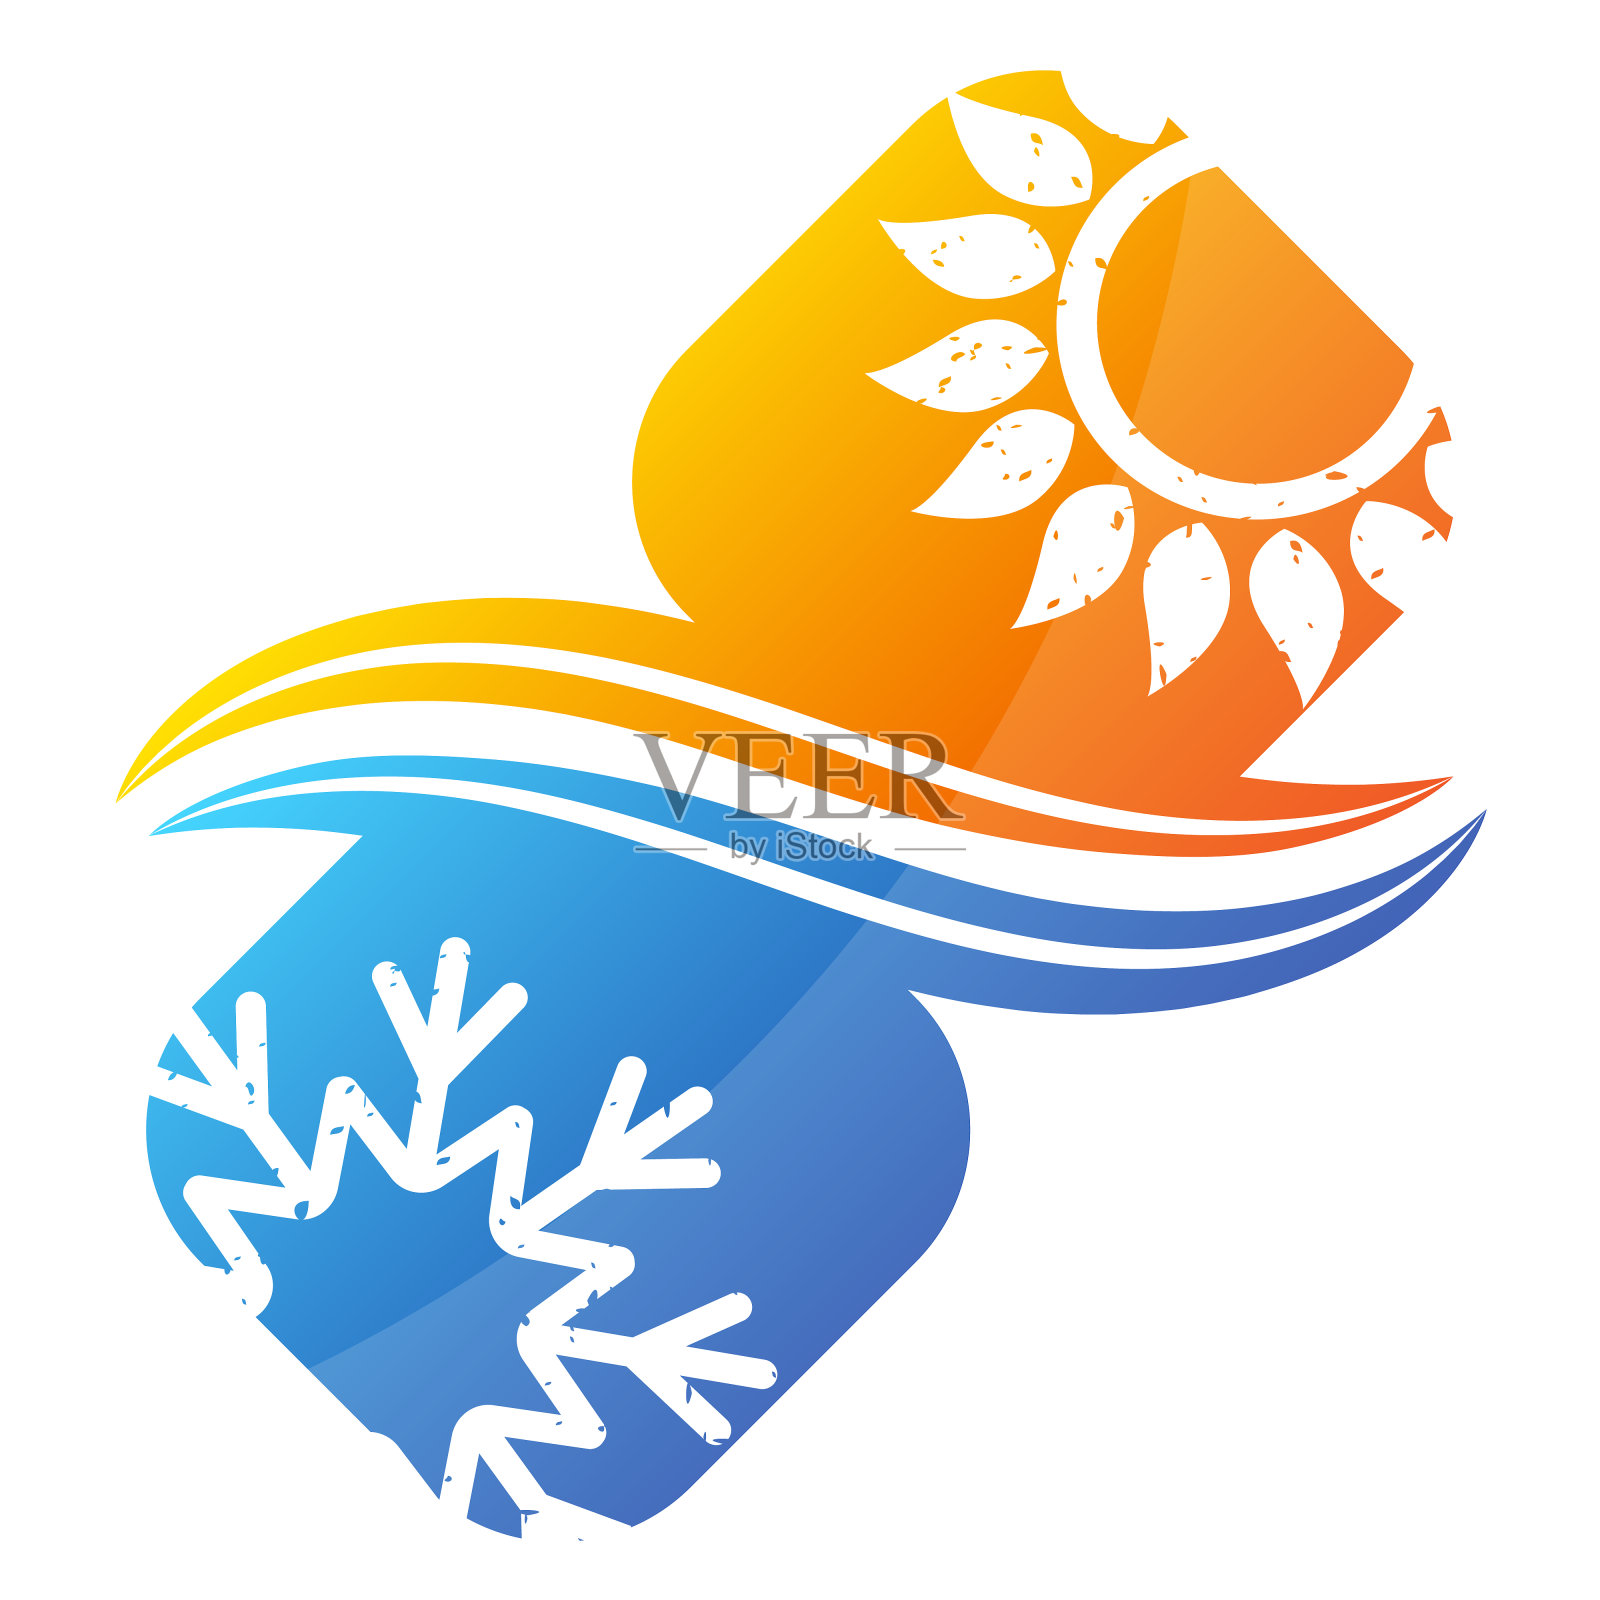 空调雪花和太阳象征着加热冷却设计元素图片